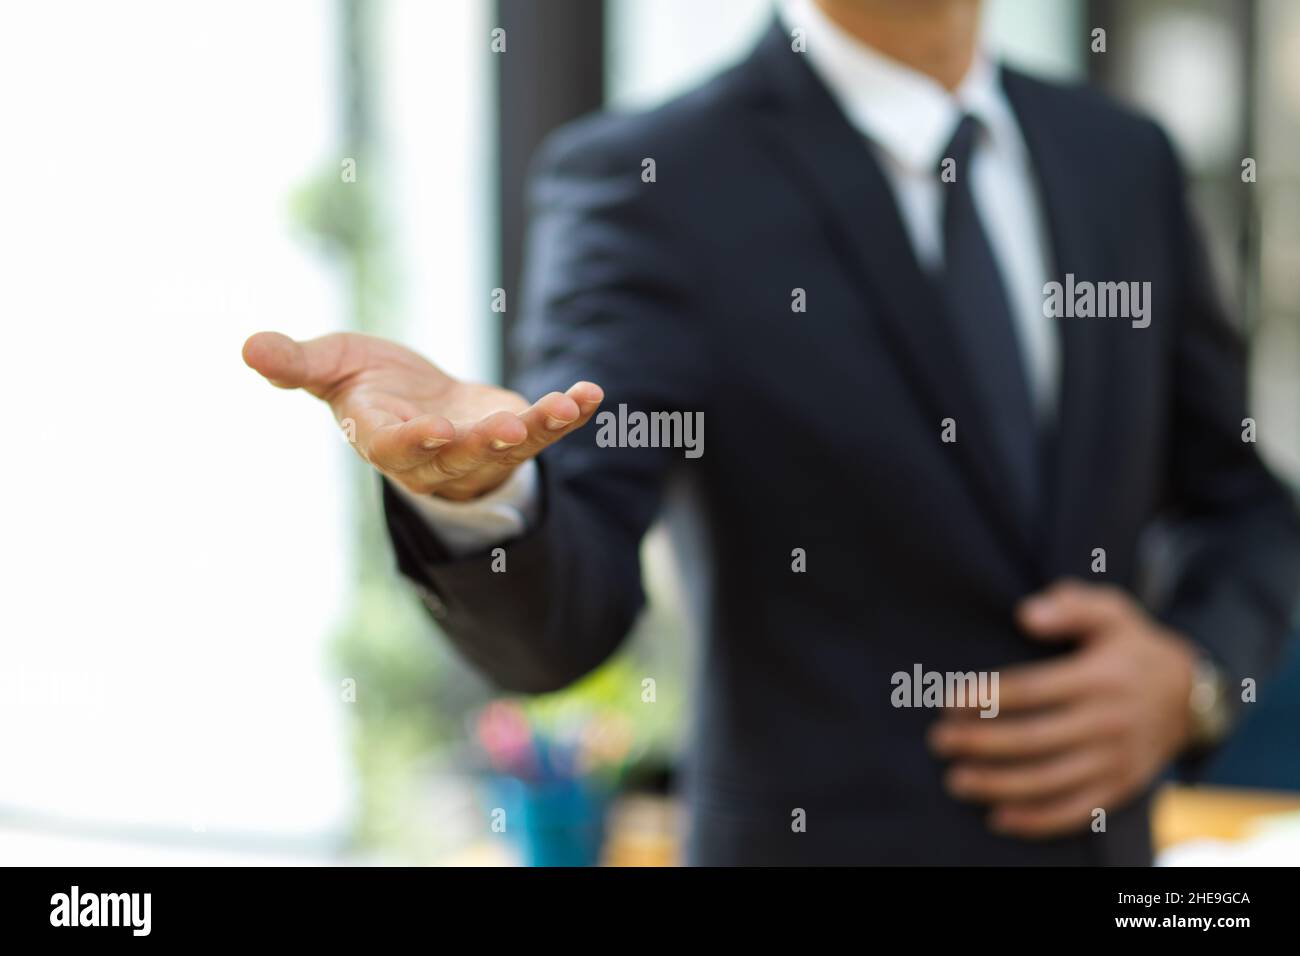 Ein Geschäftsmann in einem formellen Anzug, der die Hand ausstreckte, um die Kamera anzuhalten. Grußhand, Willkommenshand. Zugeschnittenes Bild Stockfoto